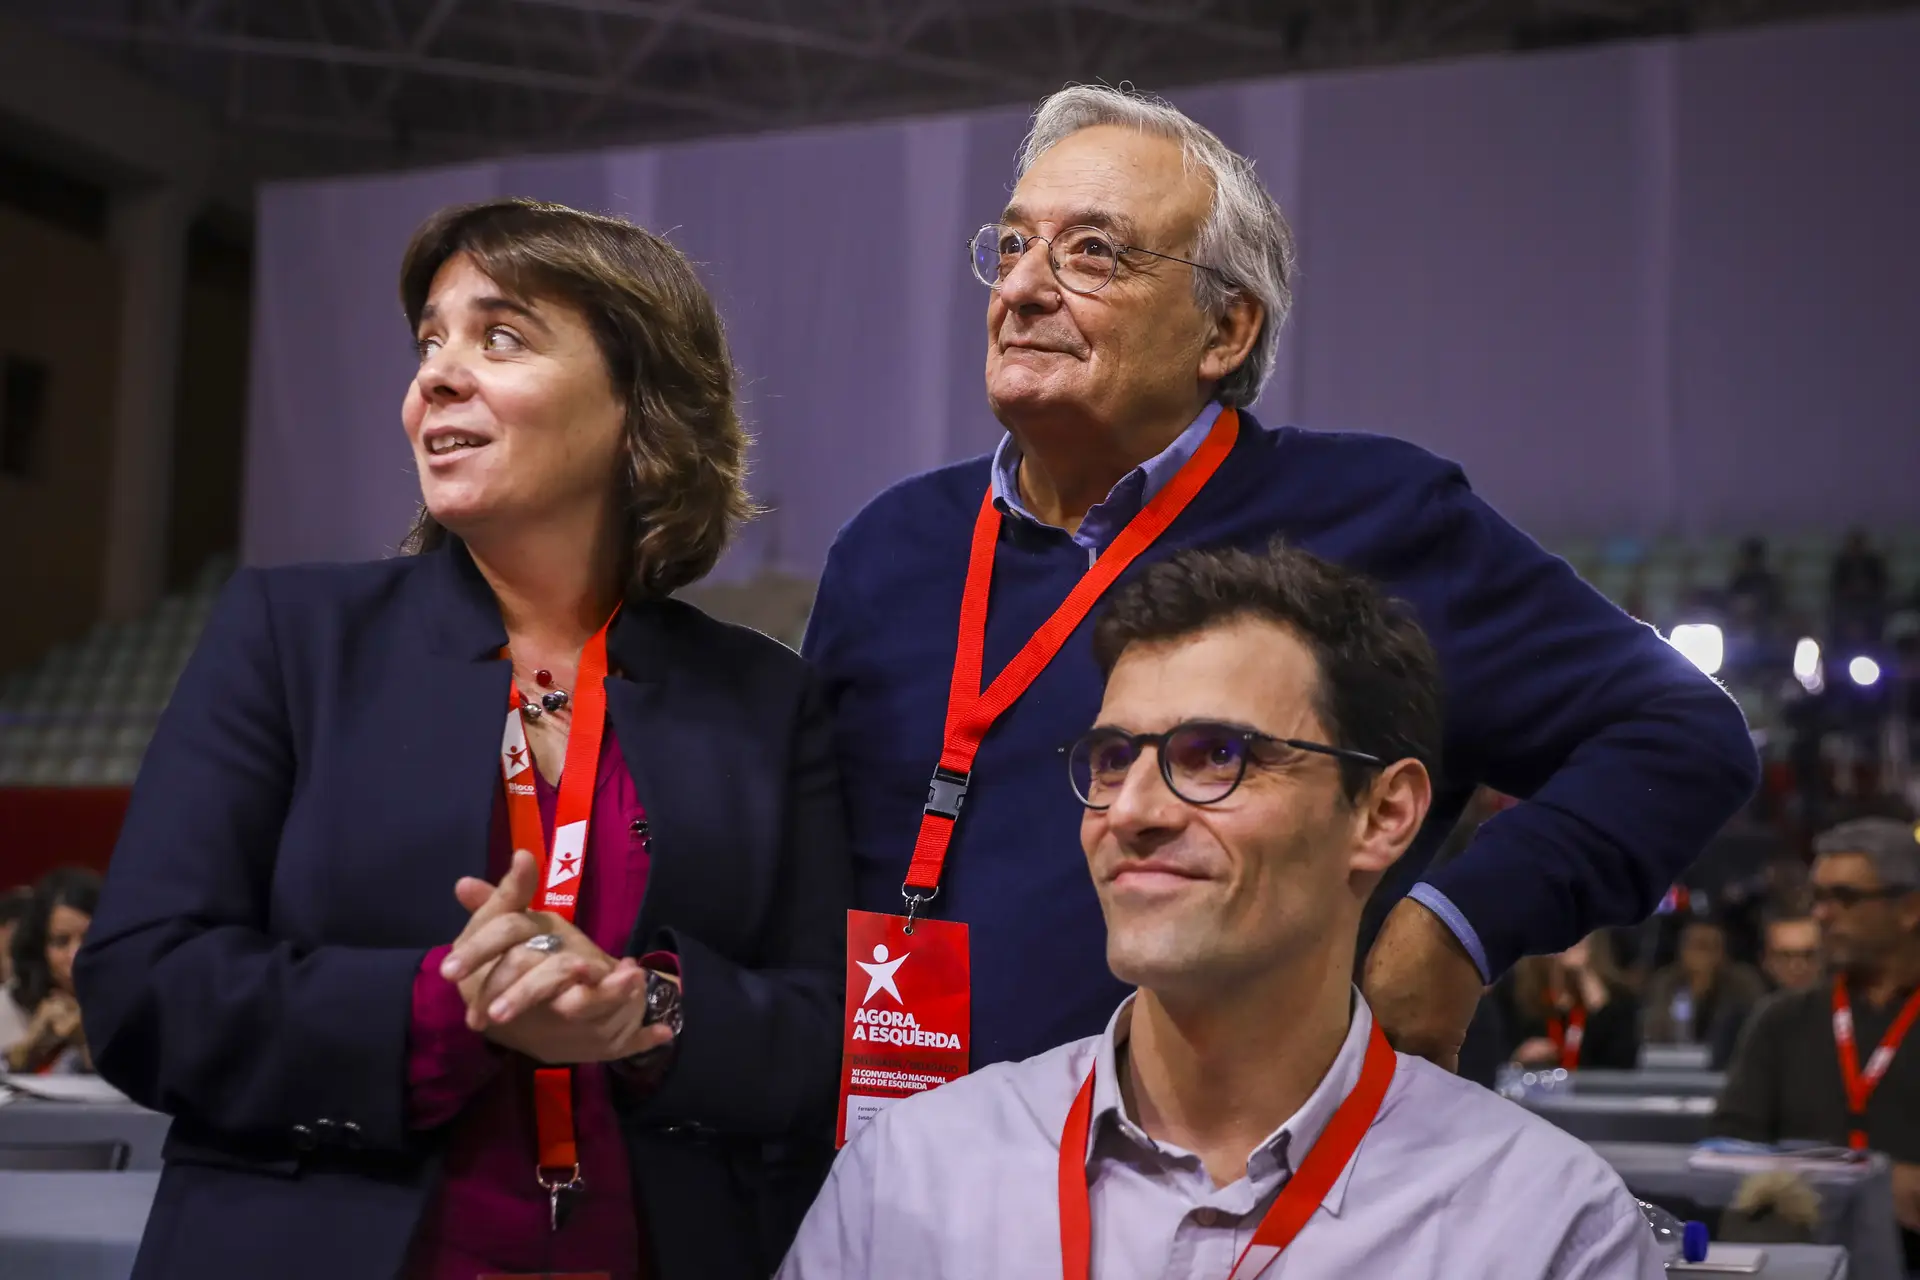 Bloco de Esquerda: Louçã, Catarina Martins e...? A breve história do partido do virar do milénio